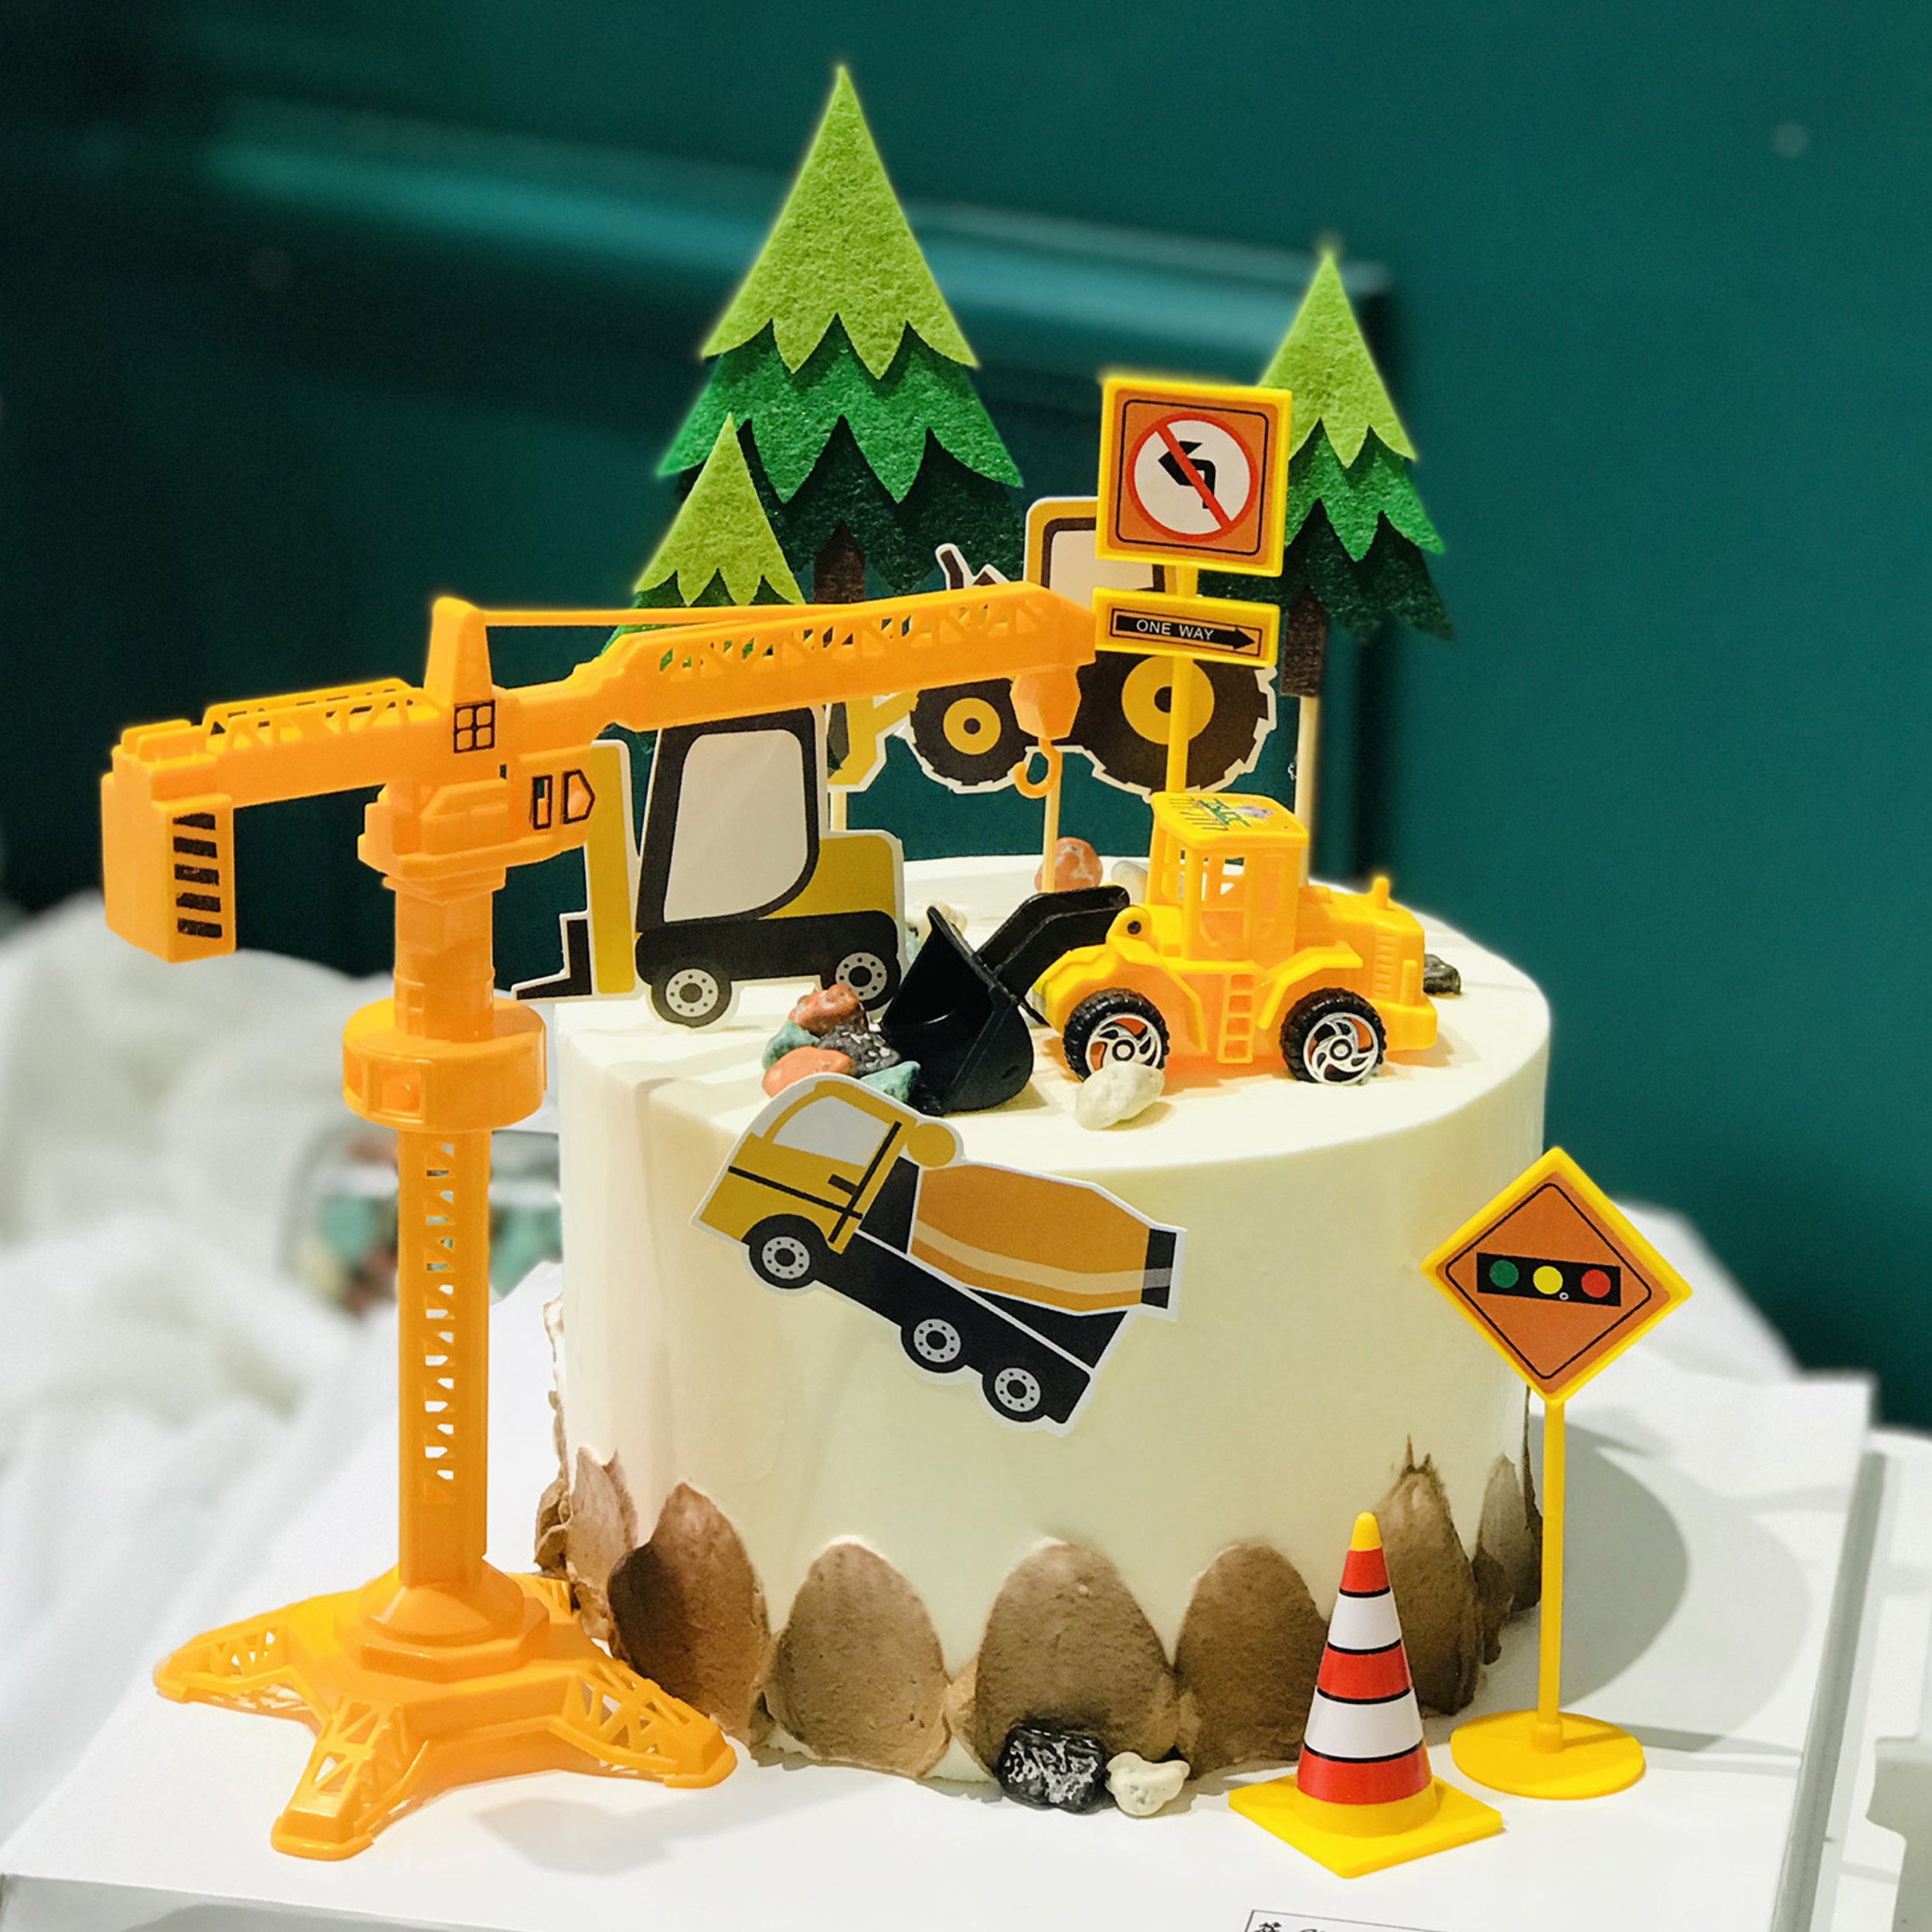 【工程车】生日蛋糕 工程车主题蛋糕 挖掘机主题蛋糕